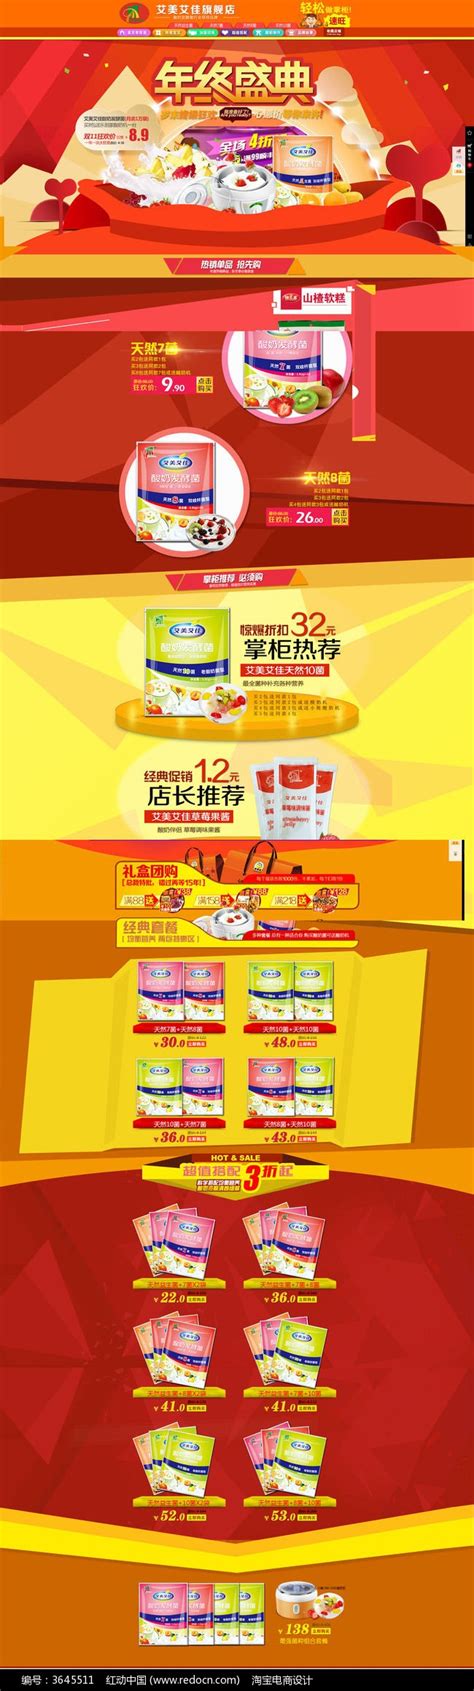 淘宝天猫食品店铺首页装修图片下载_红动中国